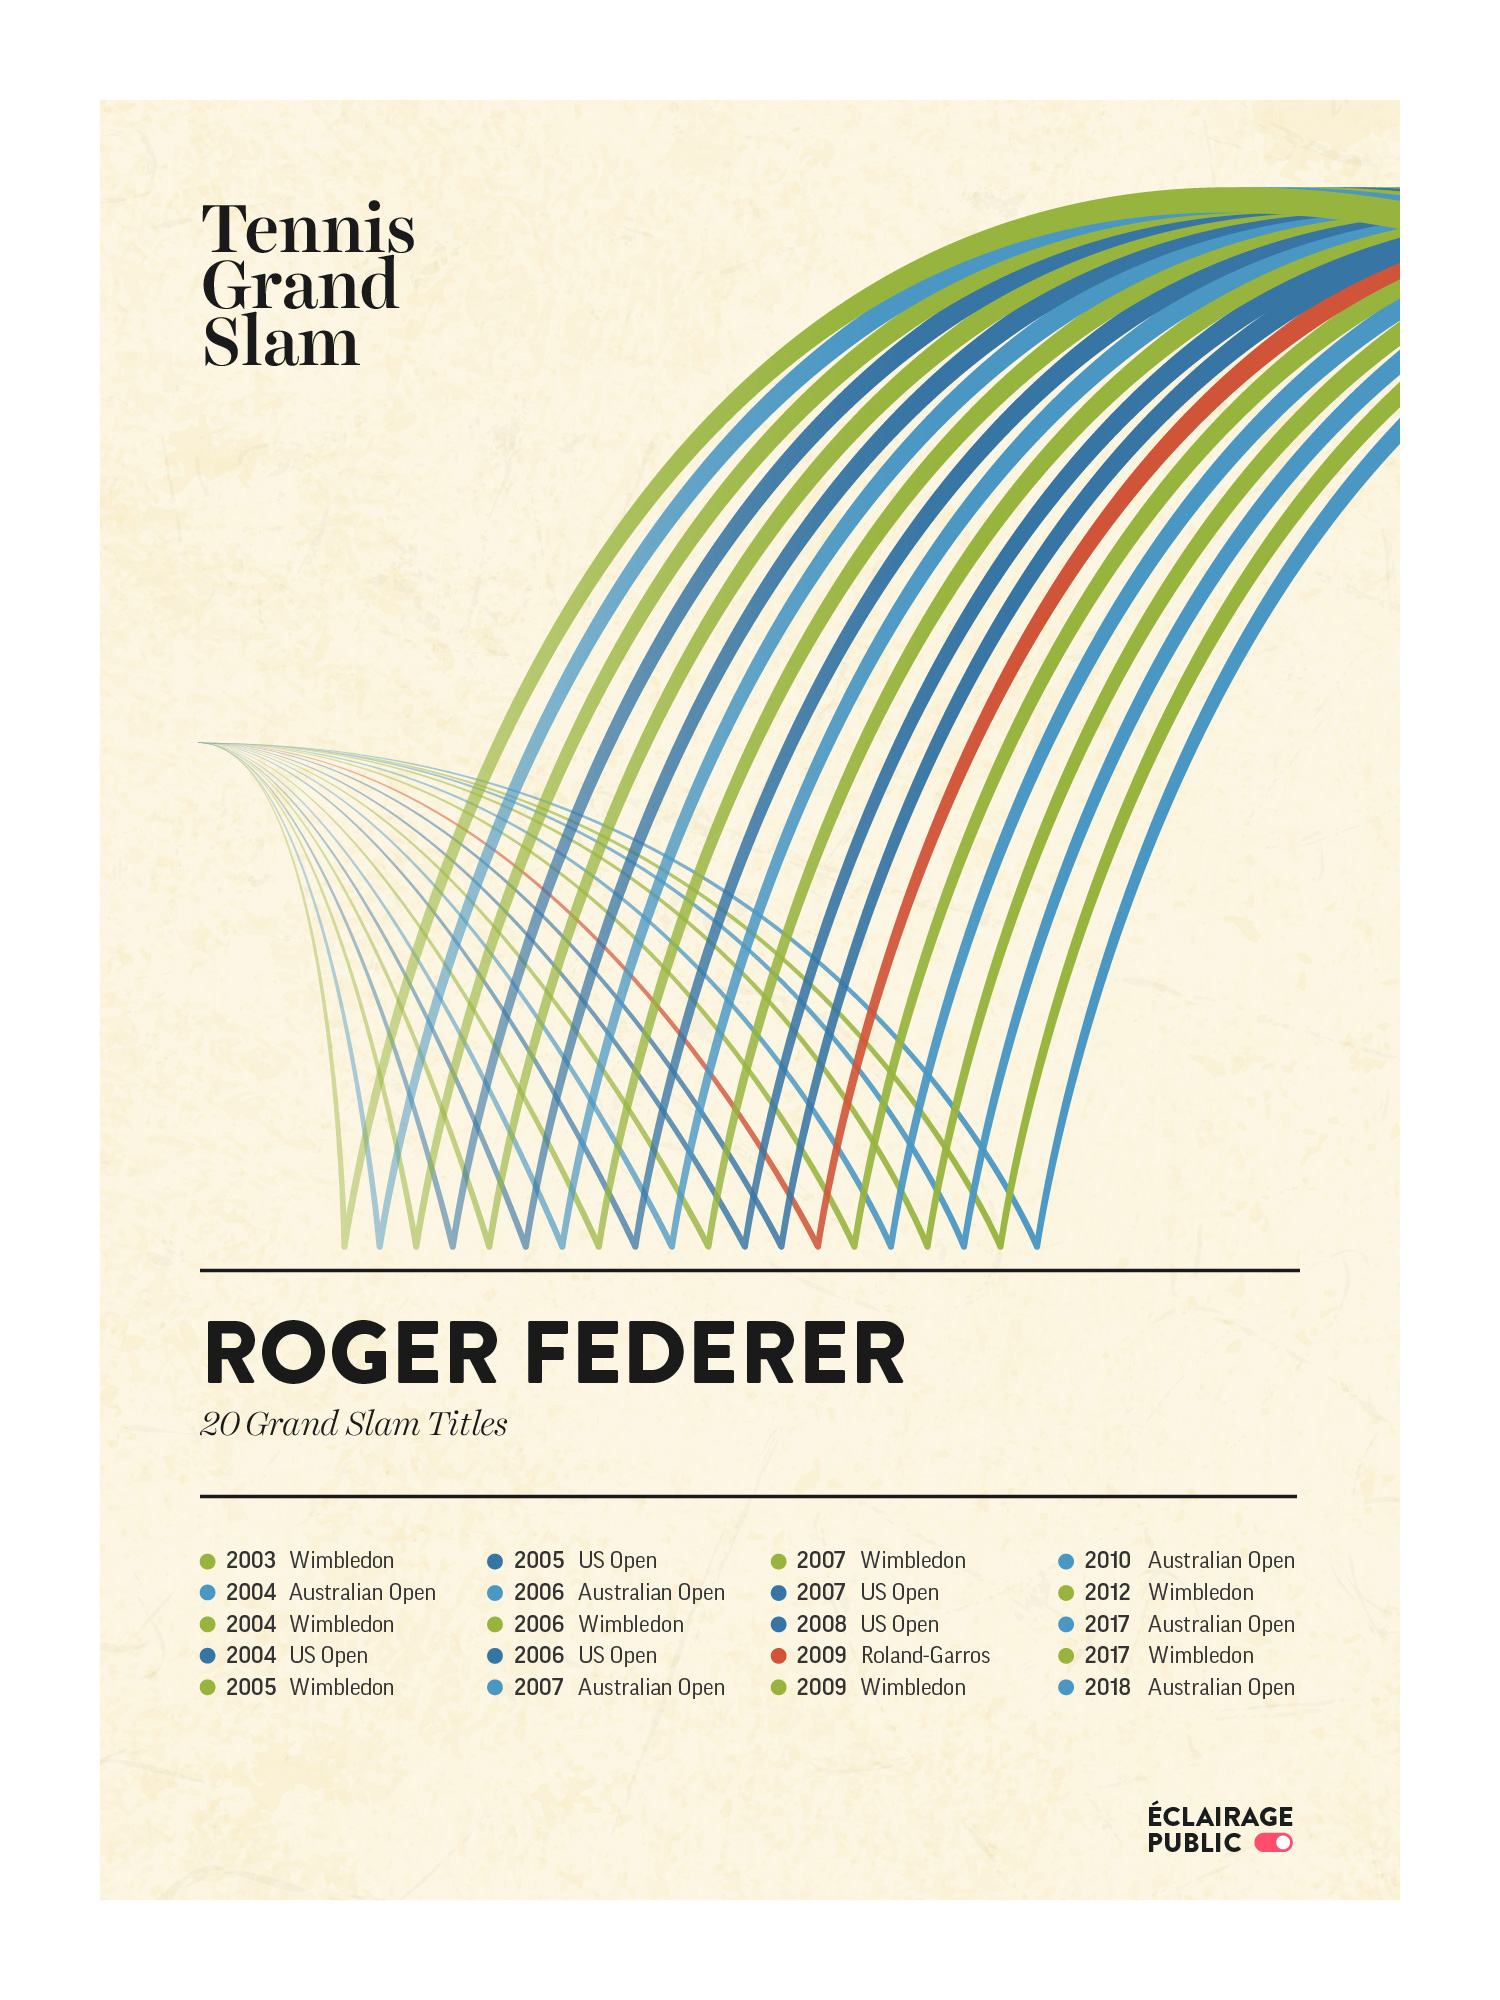 Tennis-Grand-Slam-Roger-Federer-ECLAIRAGE-PUBLIC